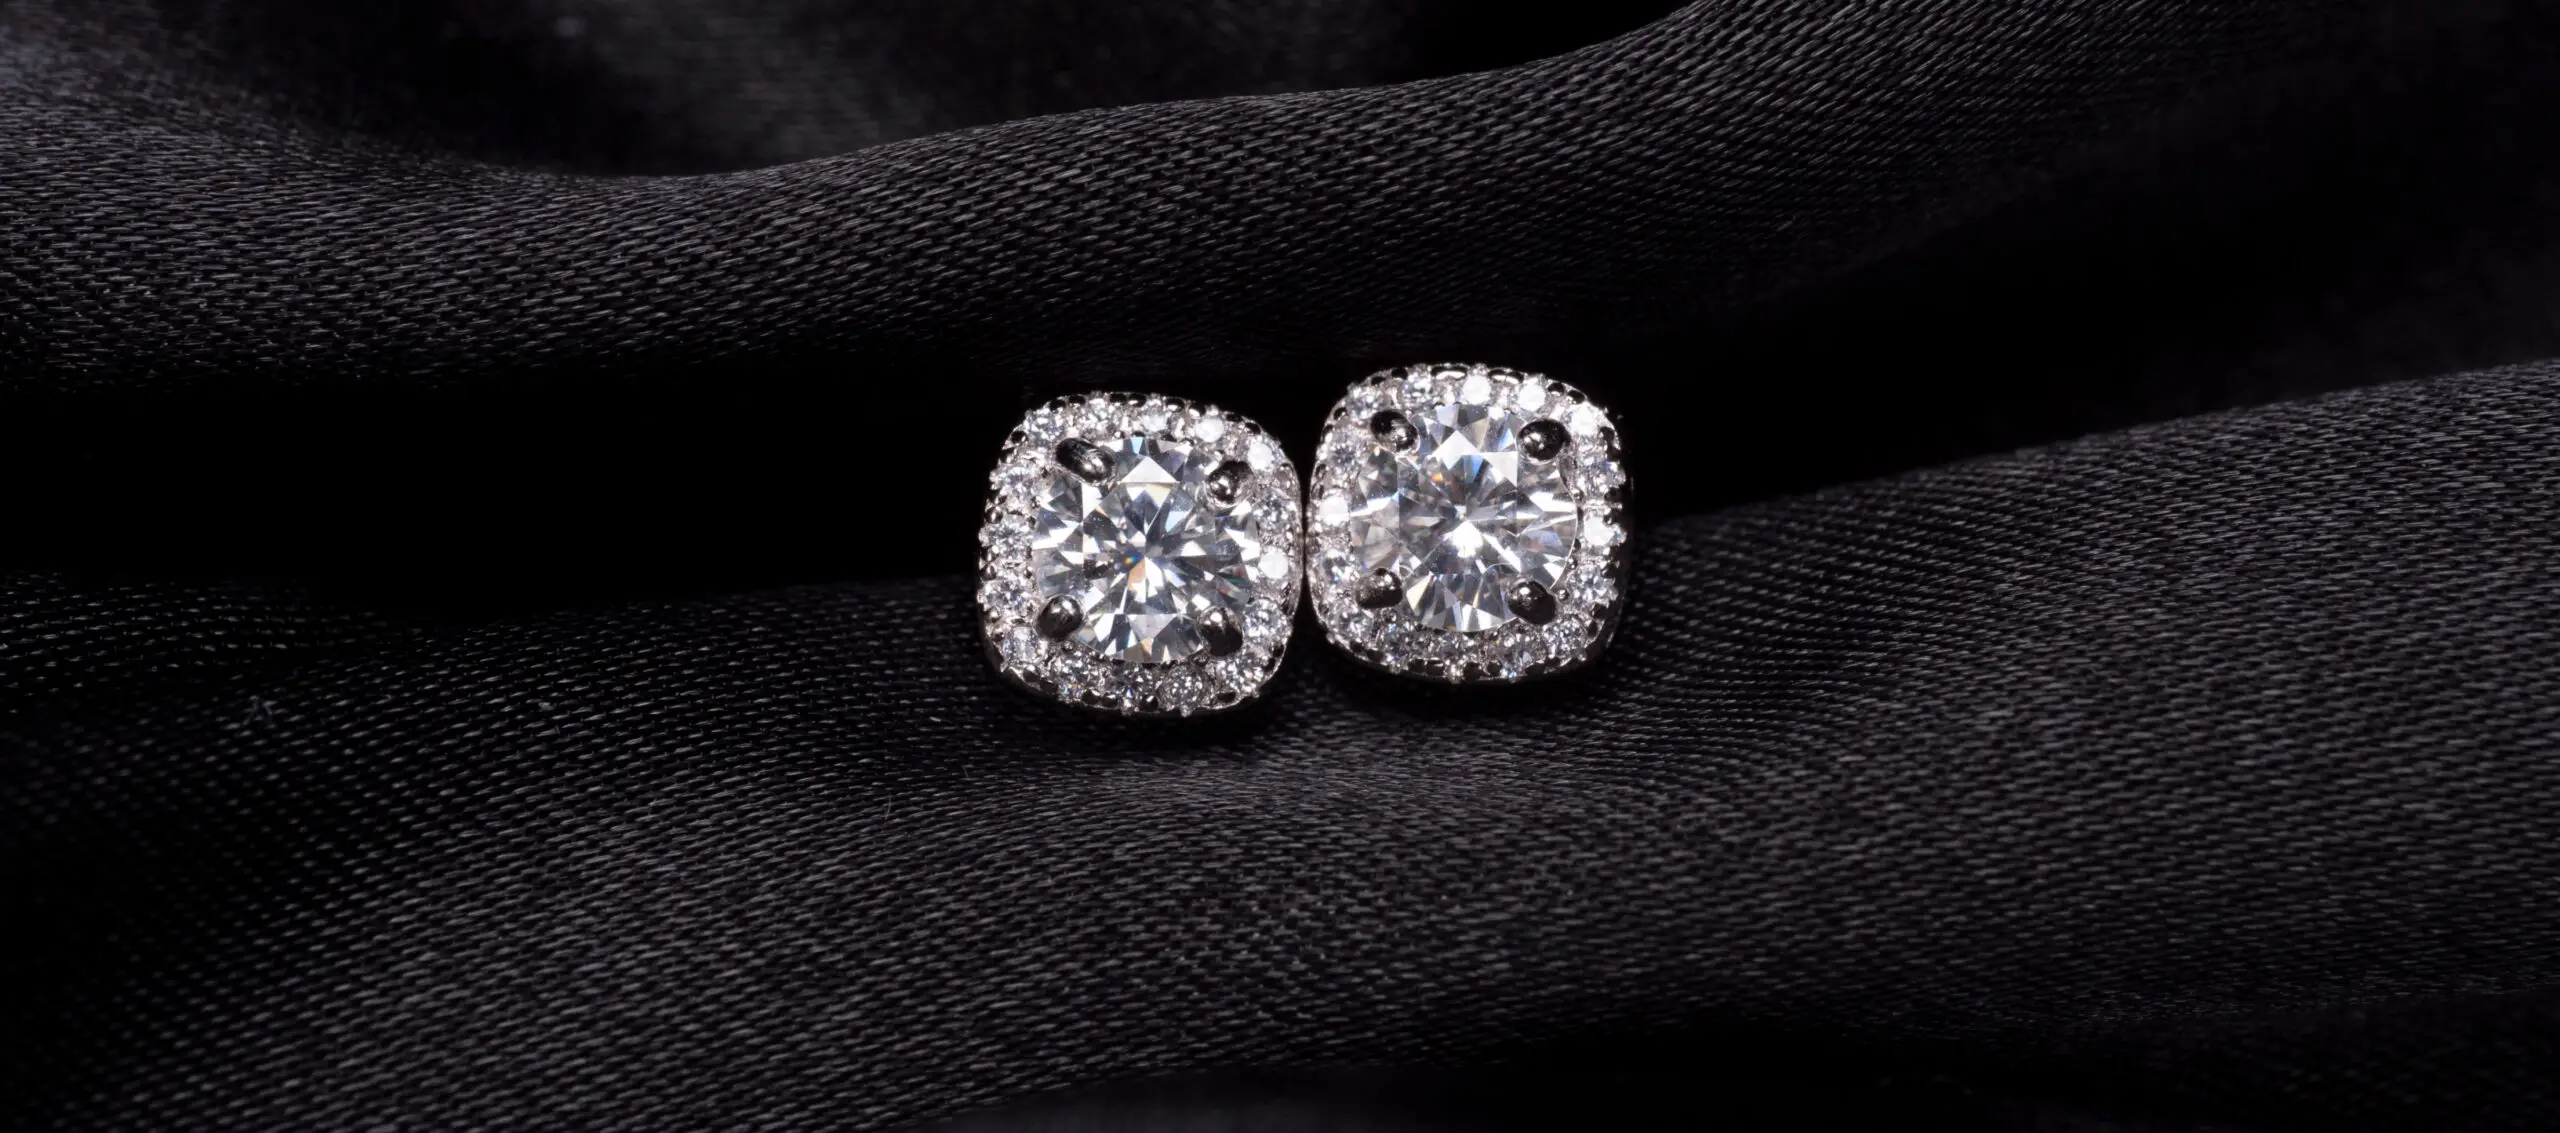 How to clean diamond stud earrings?